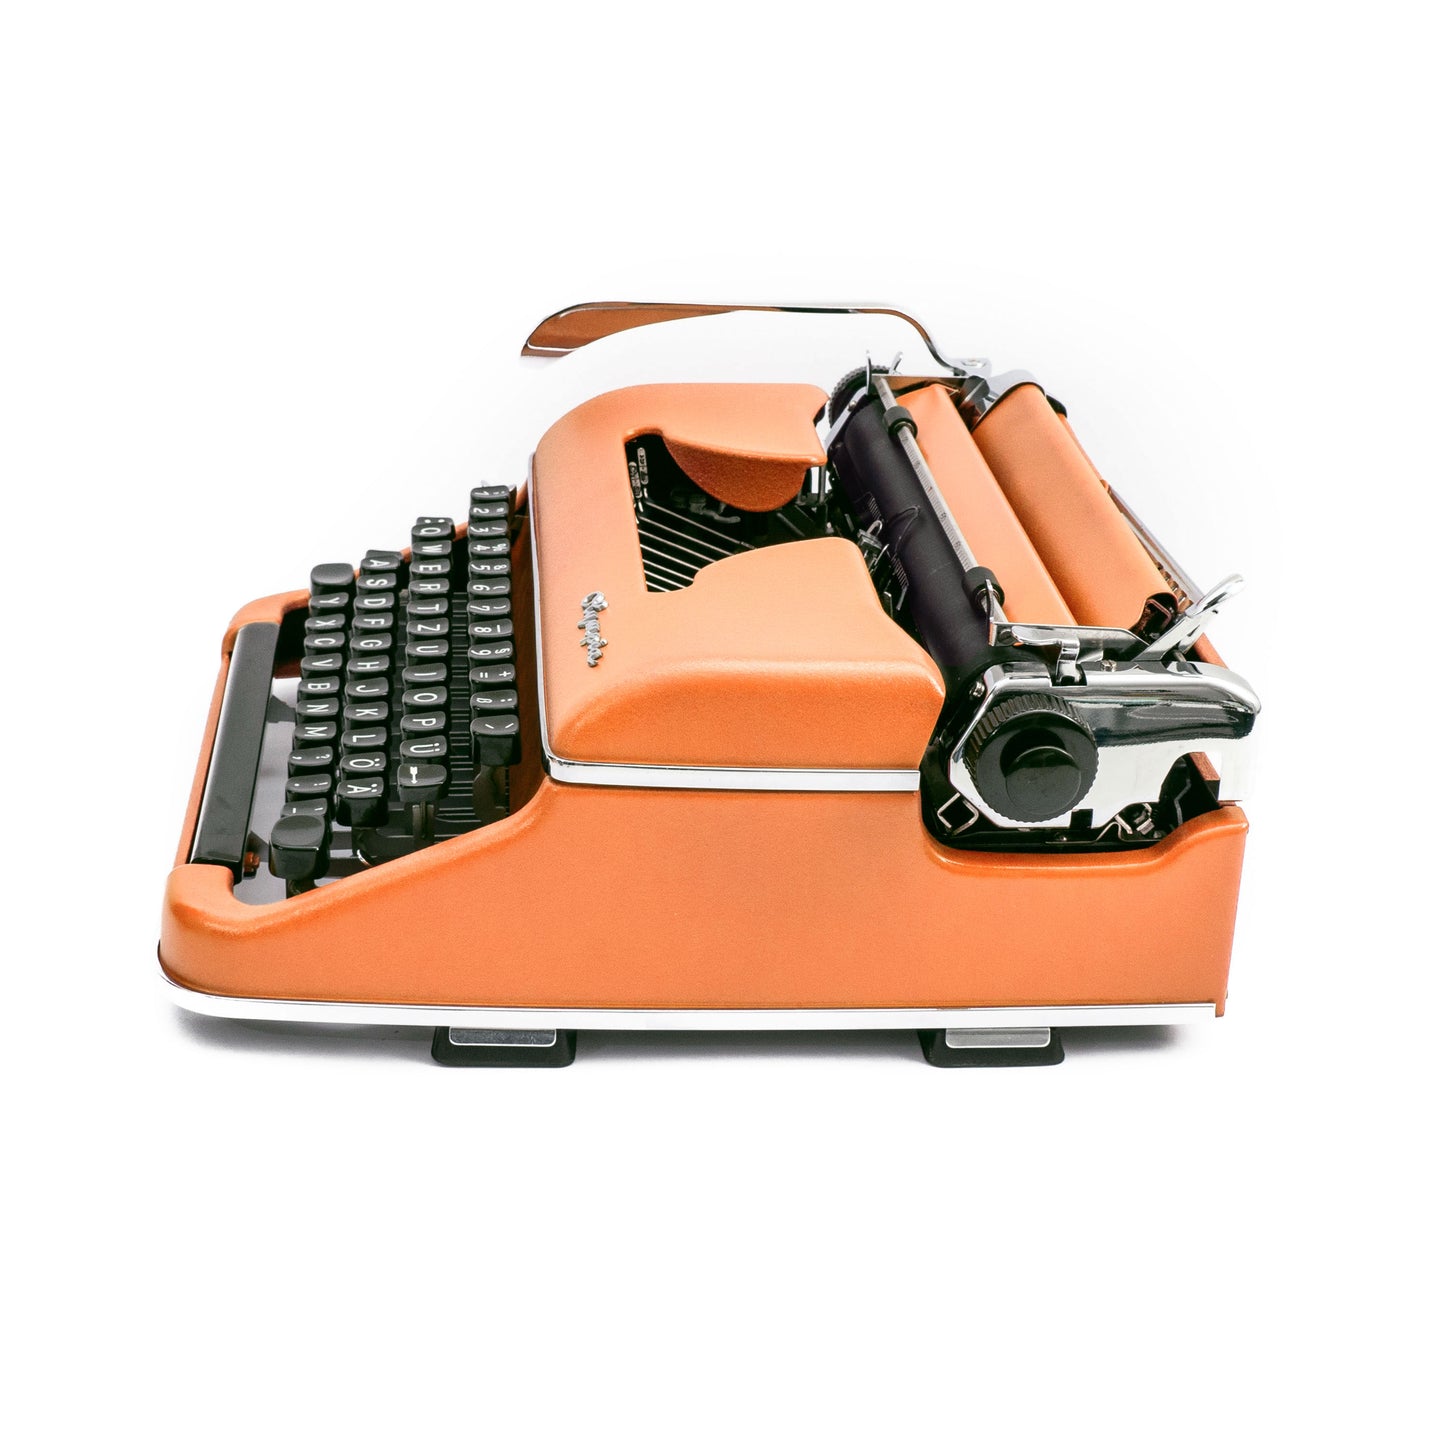 Olympia SM2 Typewriter Orange